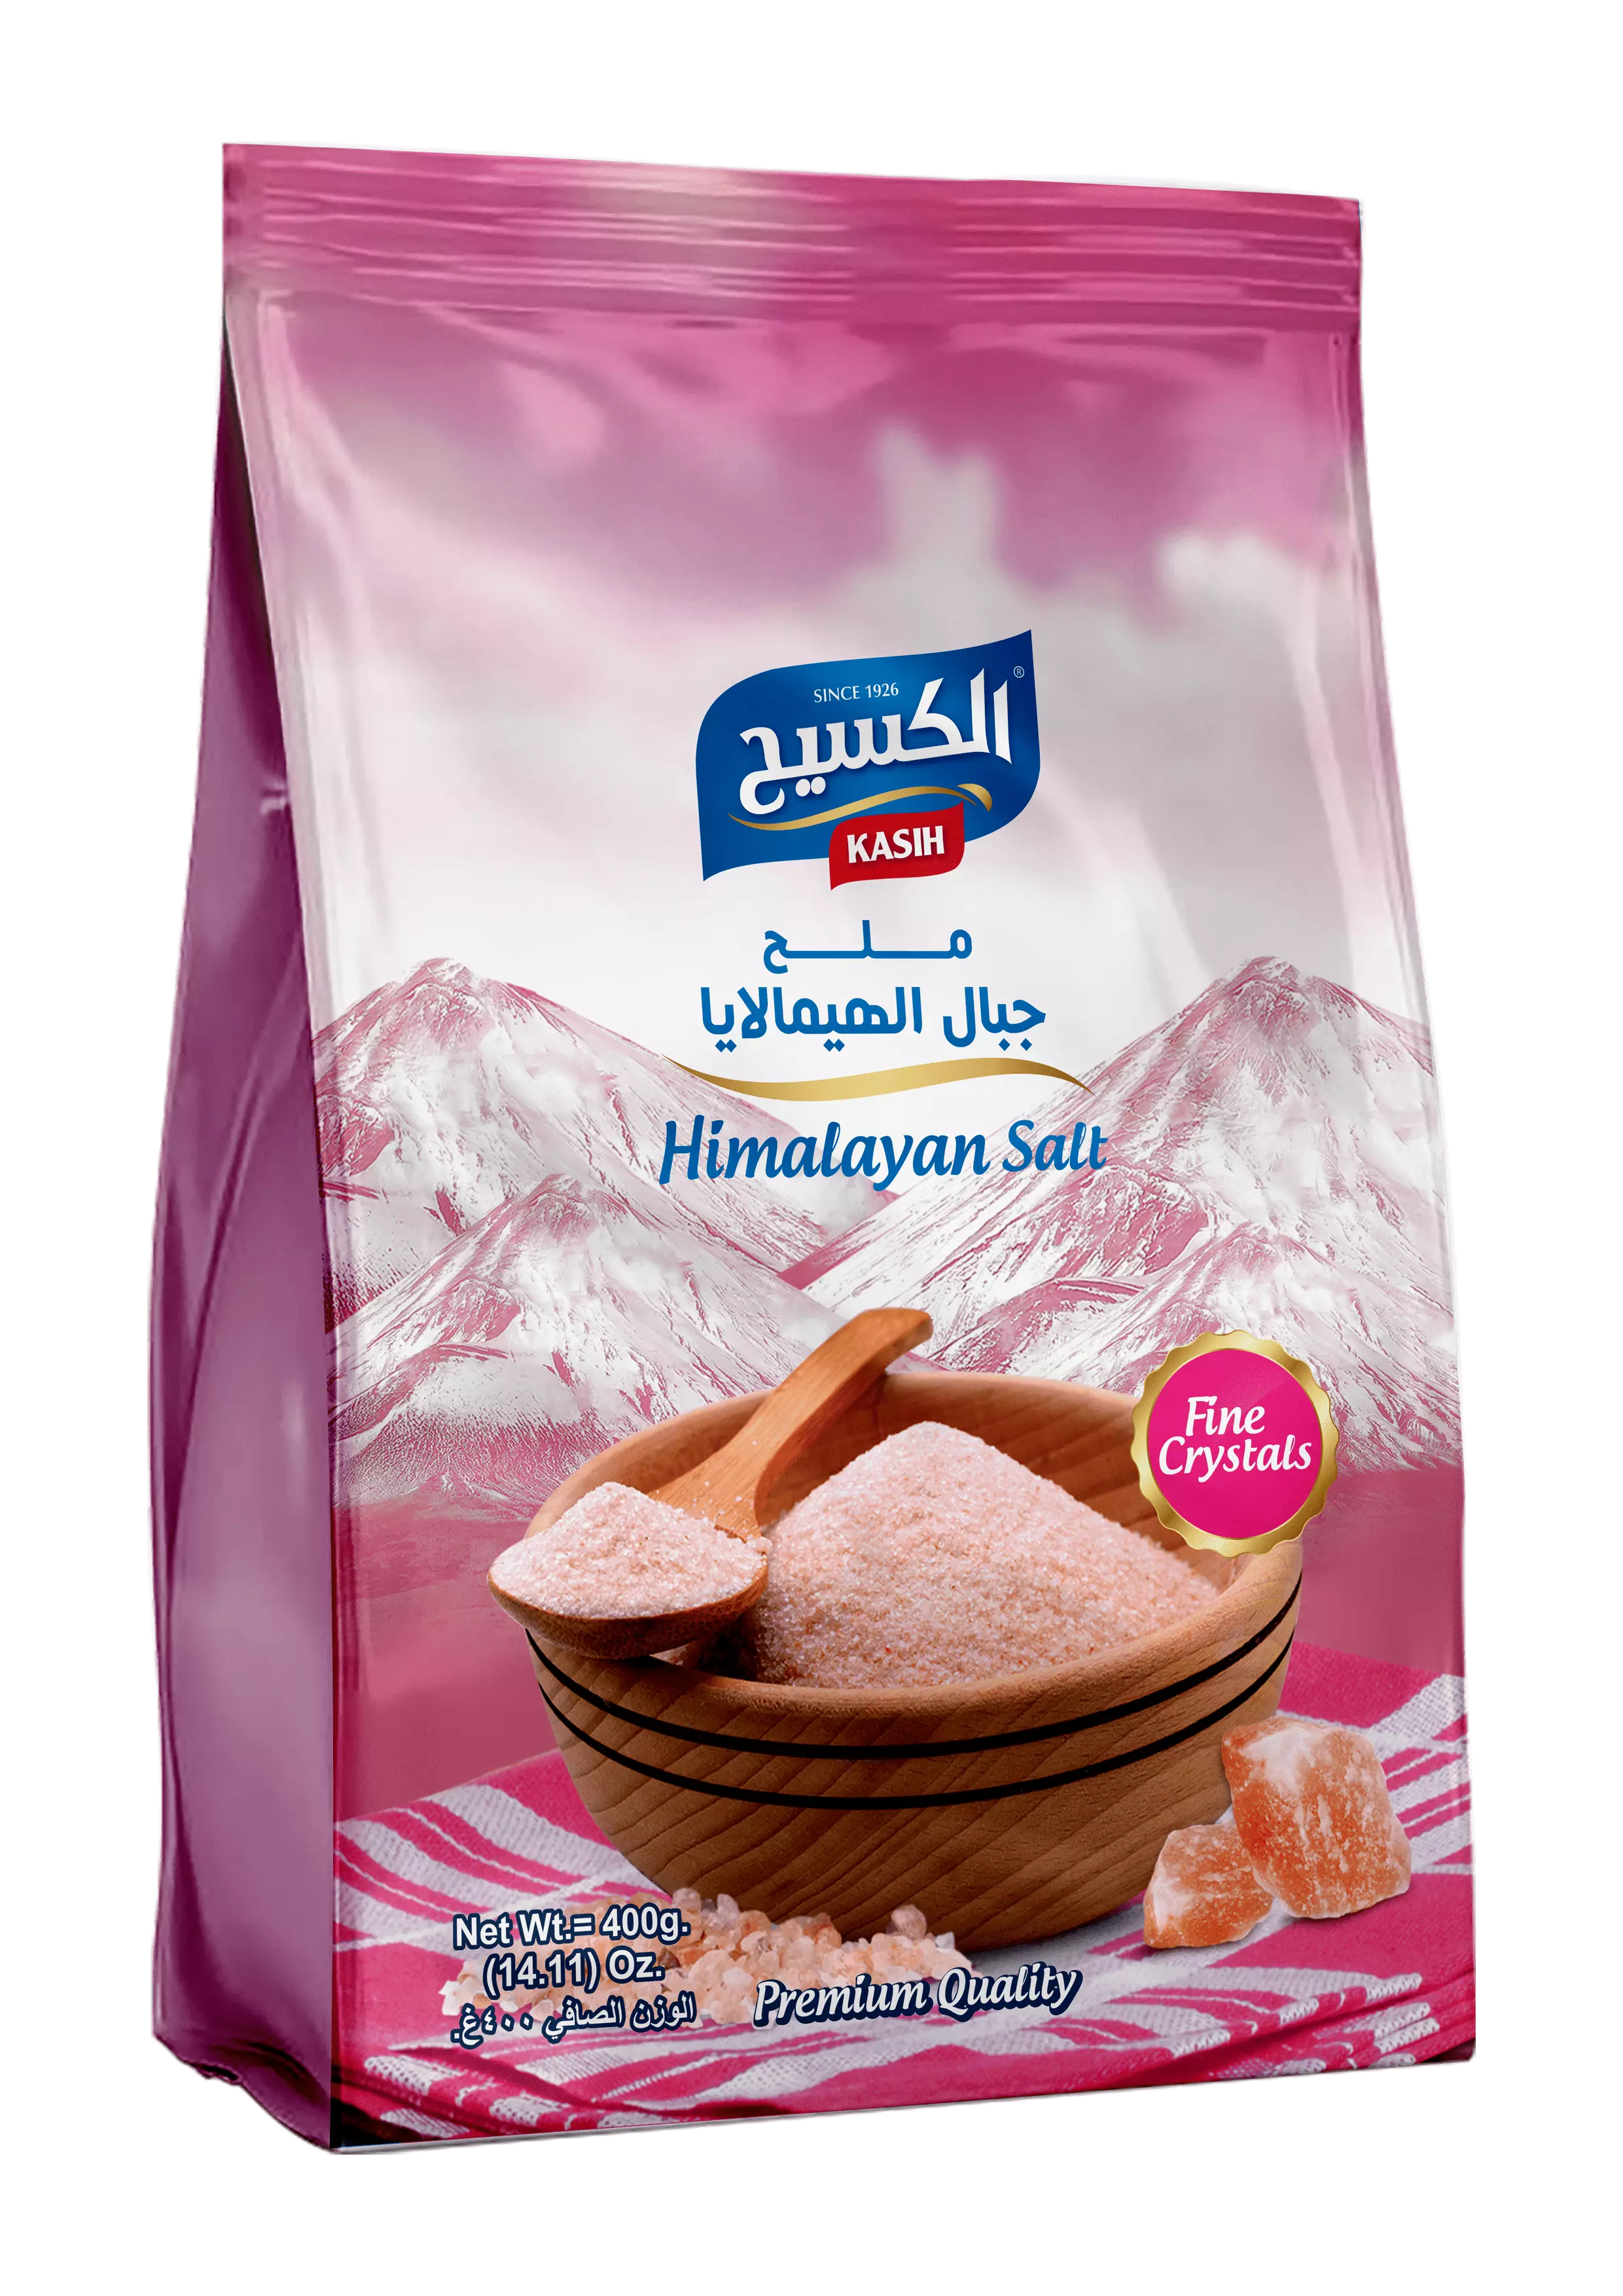  Kasih_Himalayan_Salt